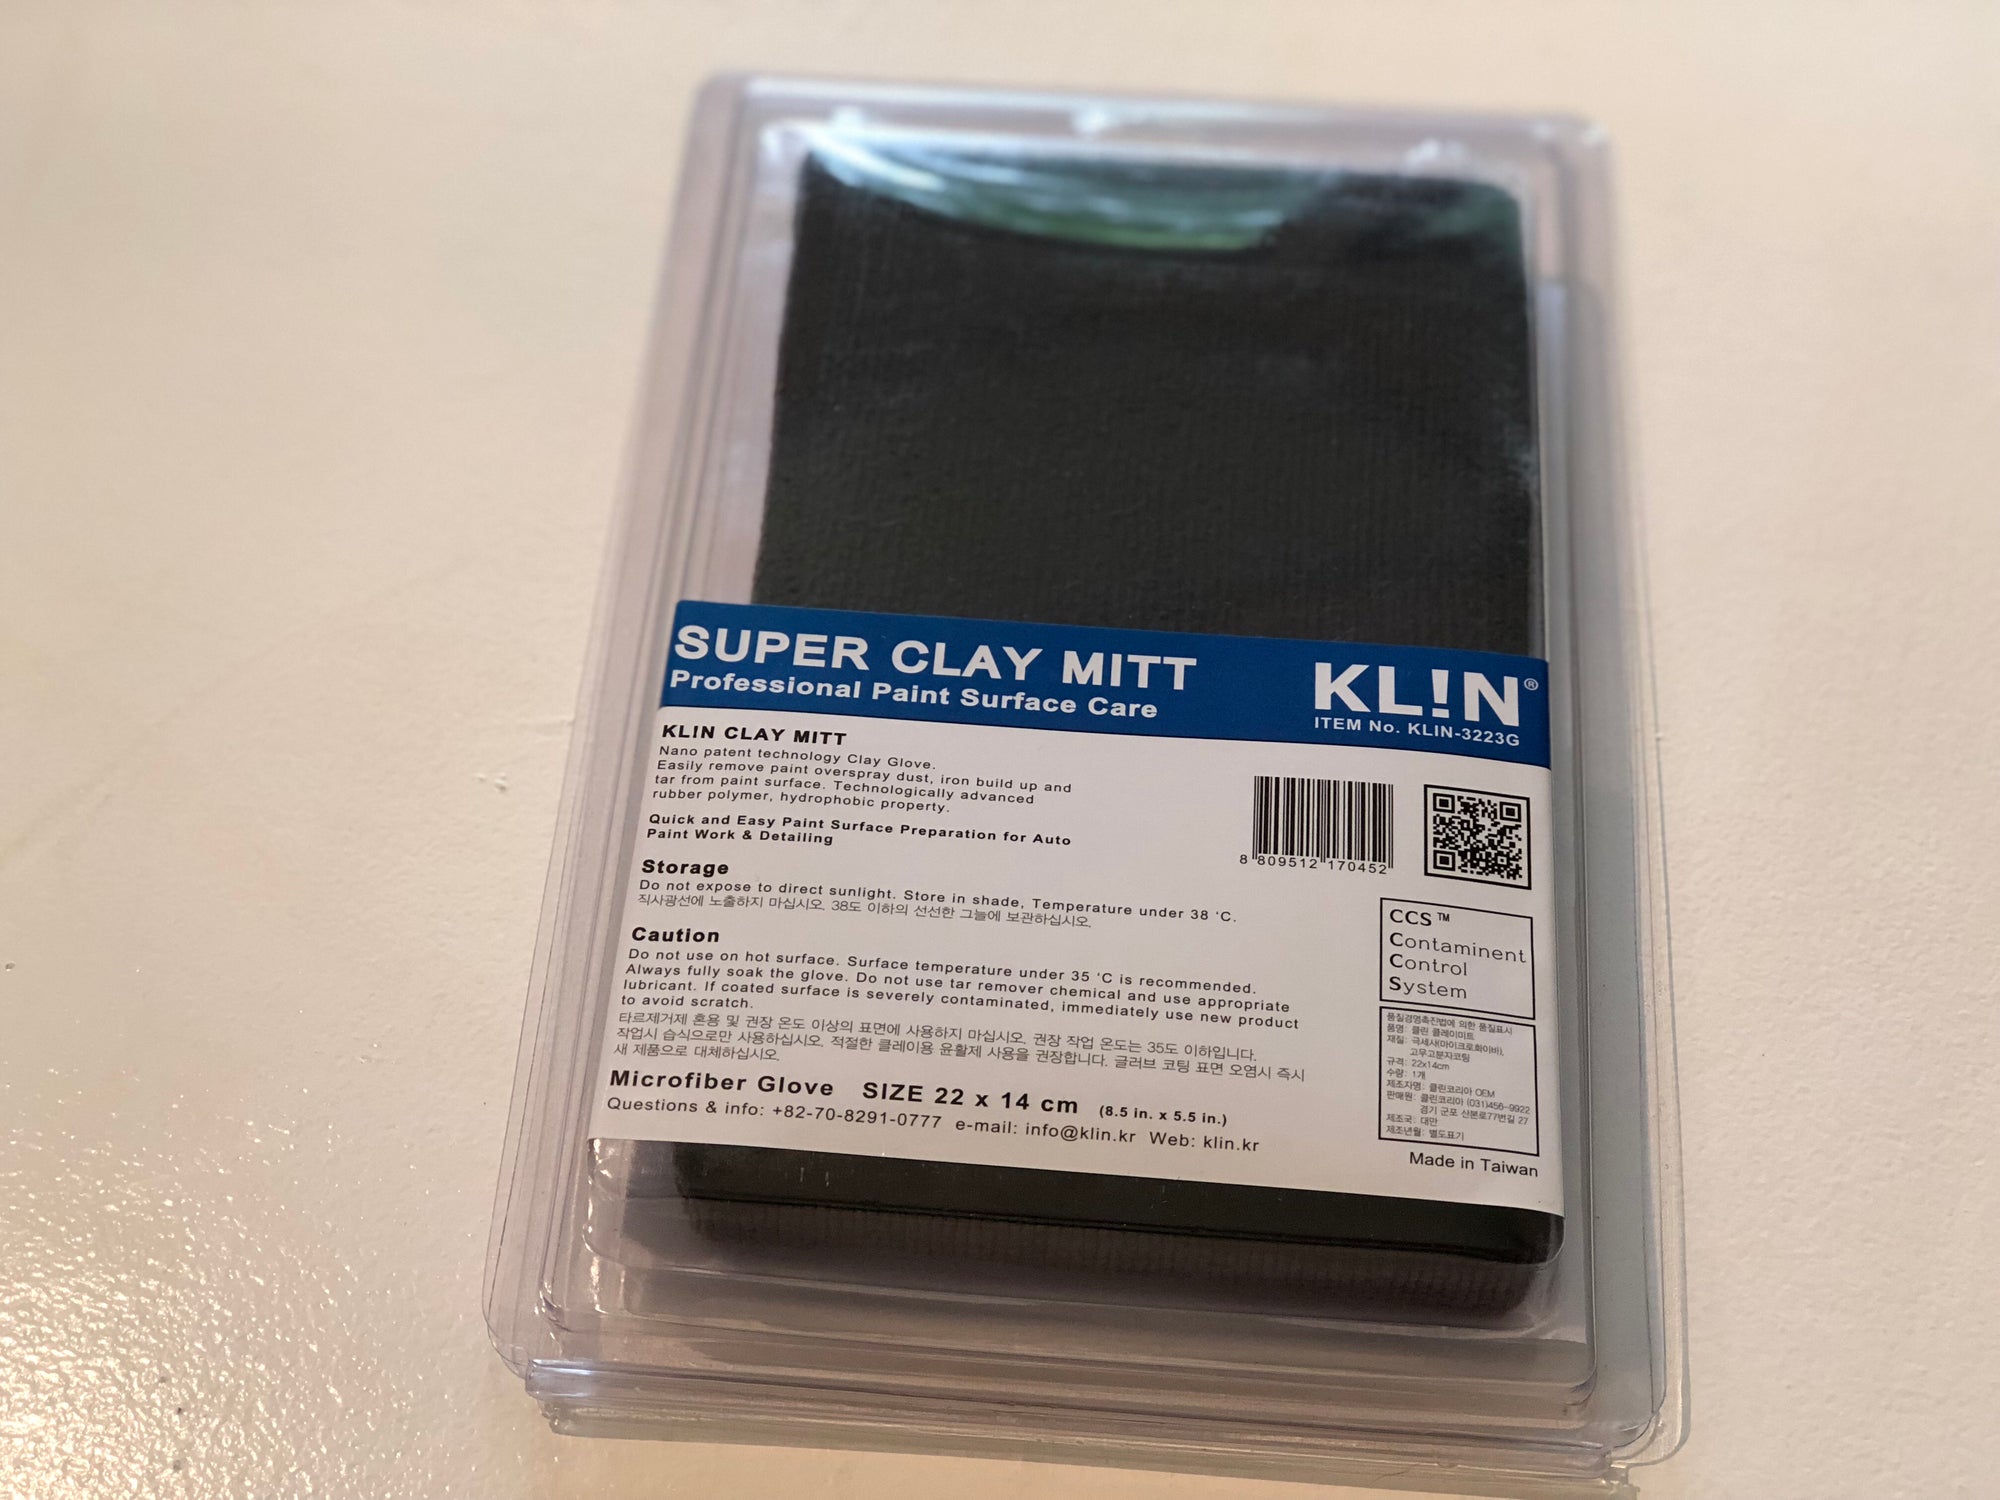 KLiN Super Clay Mitt - Detail-Division